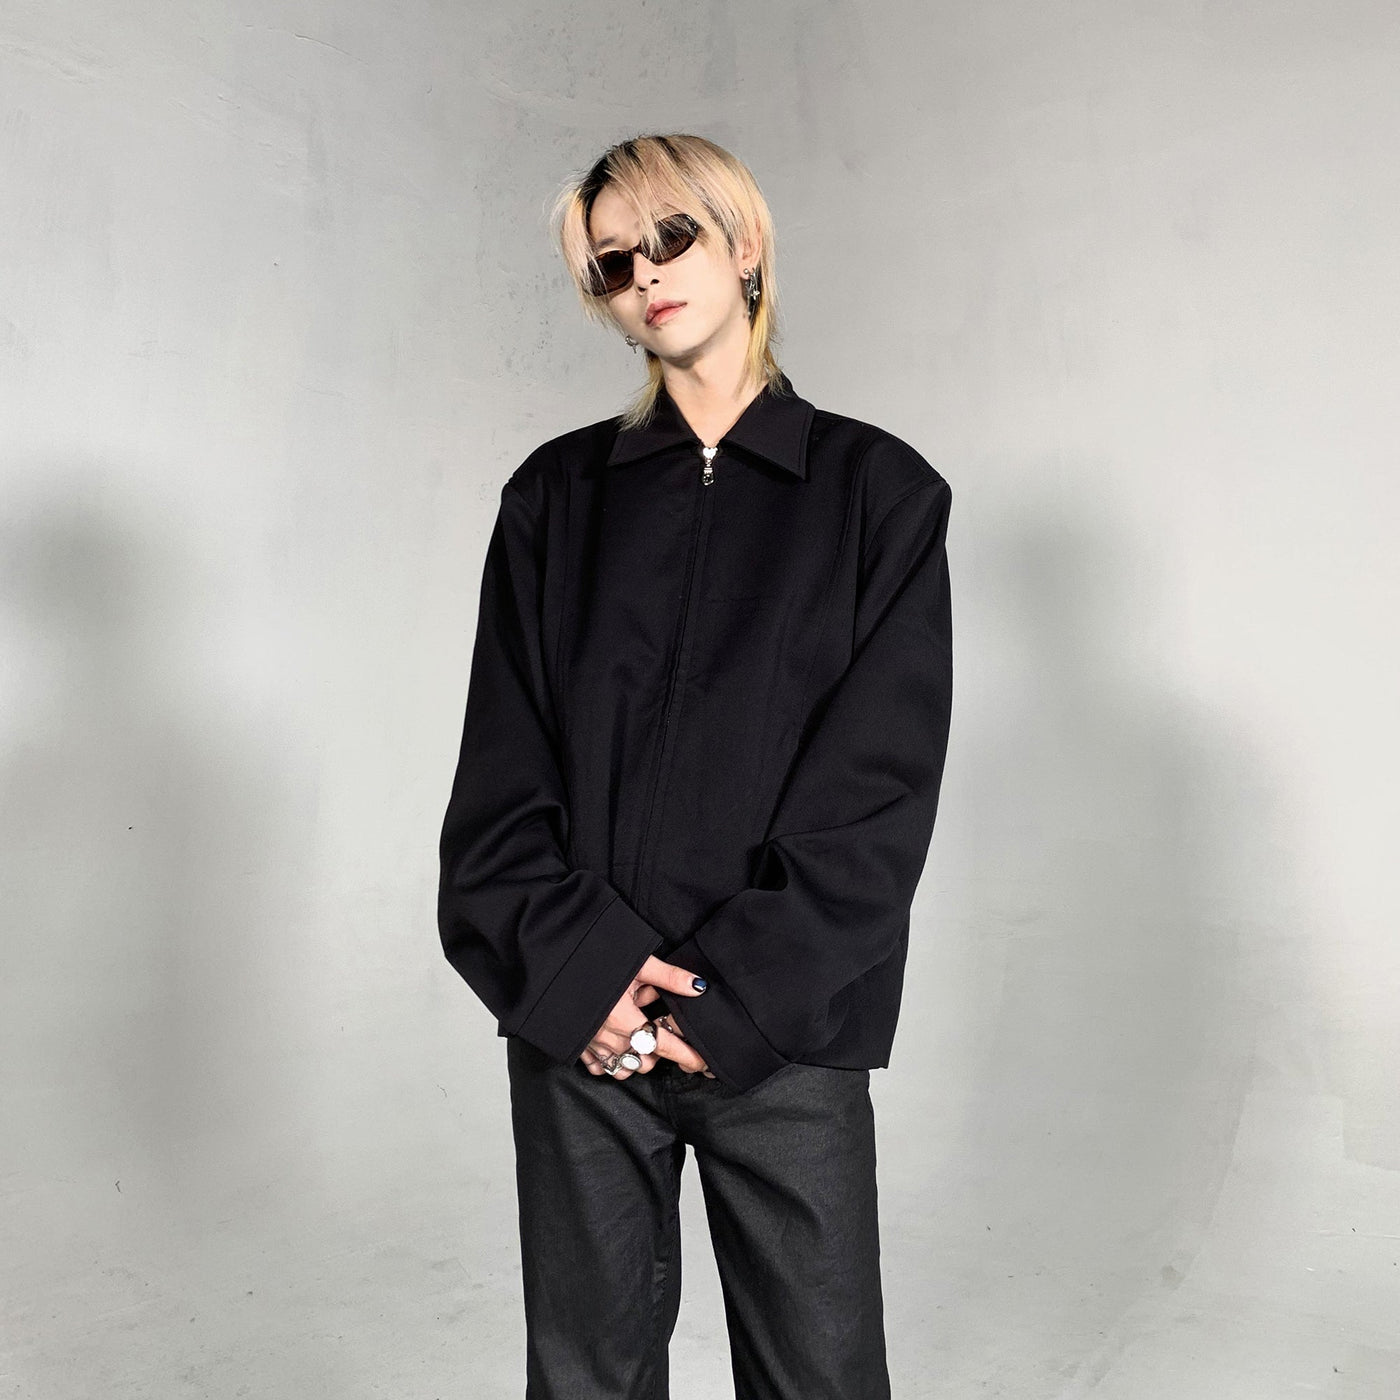 Solid Color Wide Shoulder Zip-Up Jacket Korean Street Fashion Jacket By Ash Dark Shop Online at OH Vault